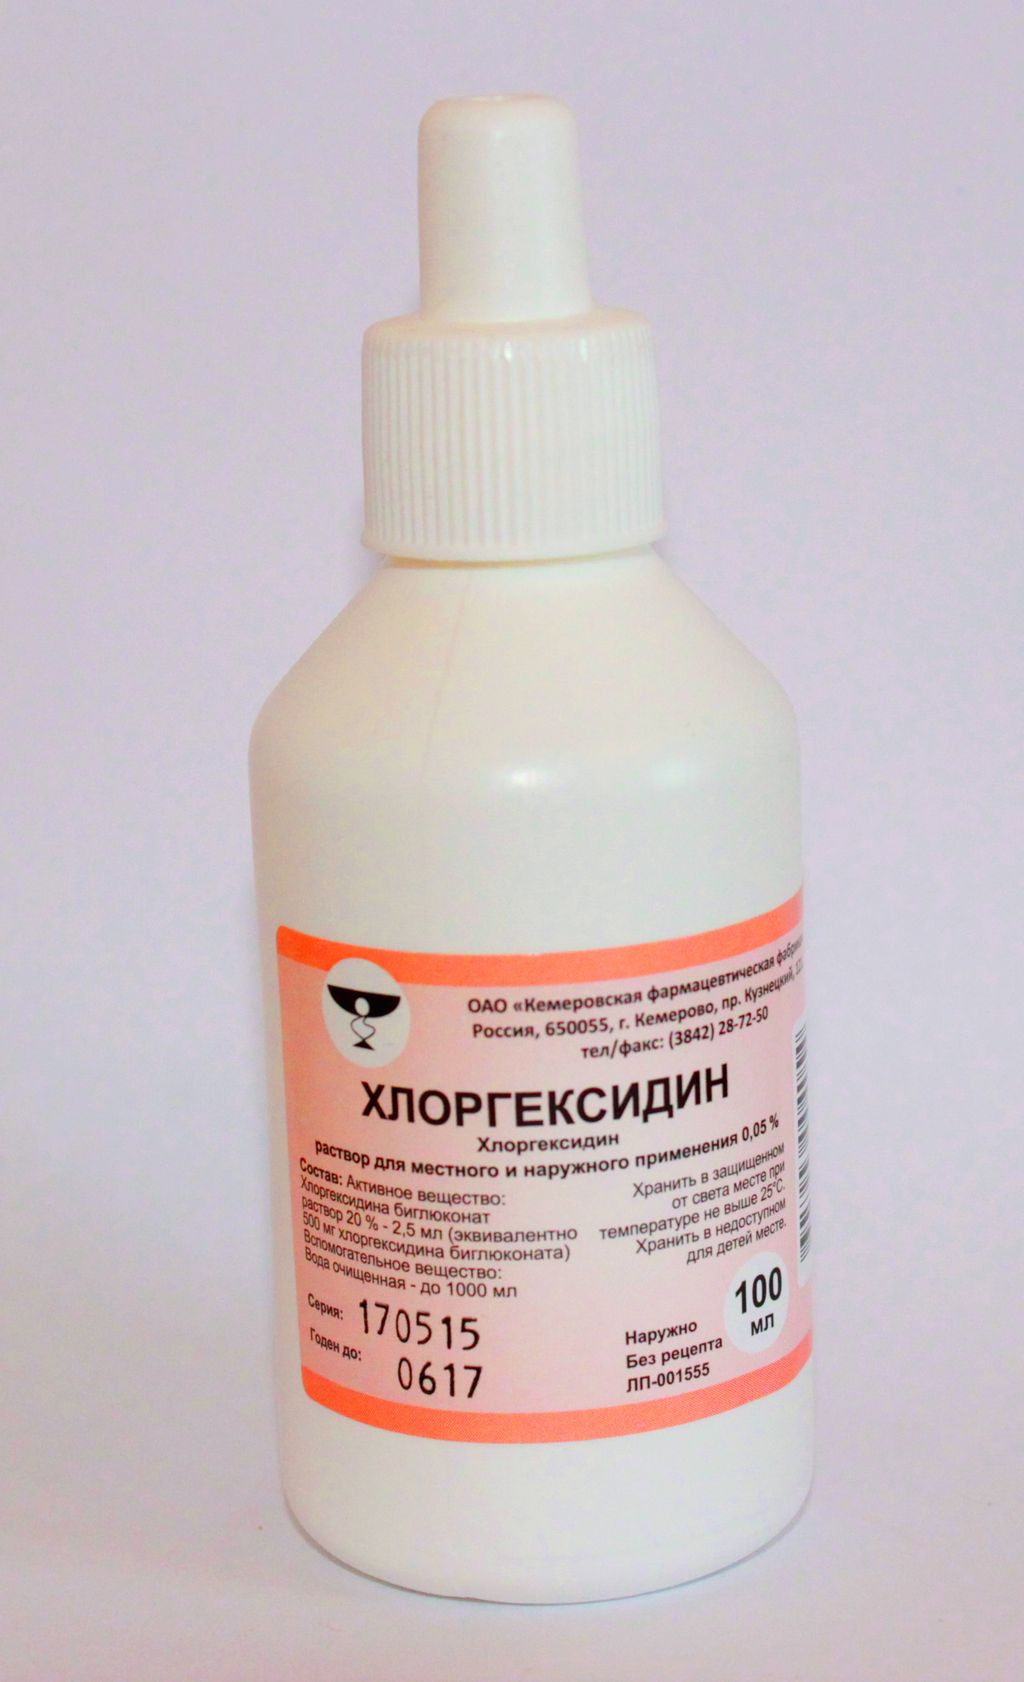 Хлоргексидин, 0.05%, раствор для местного и наружного применения, 100 .